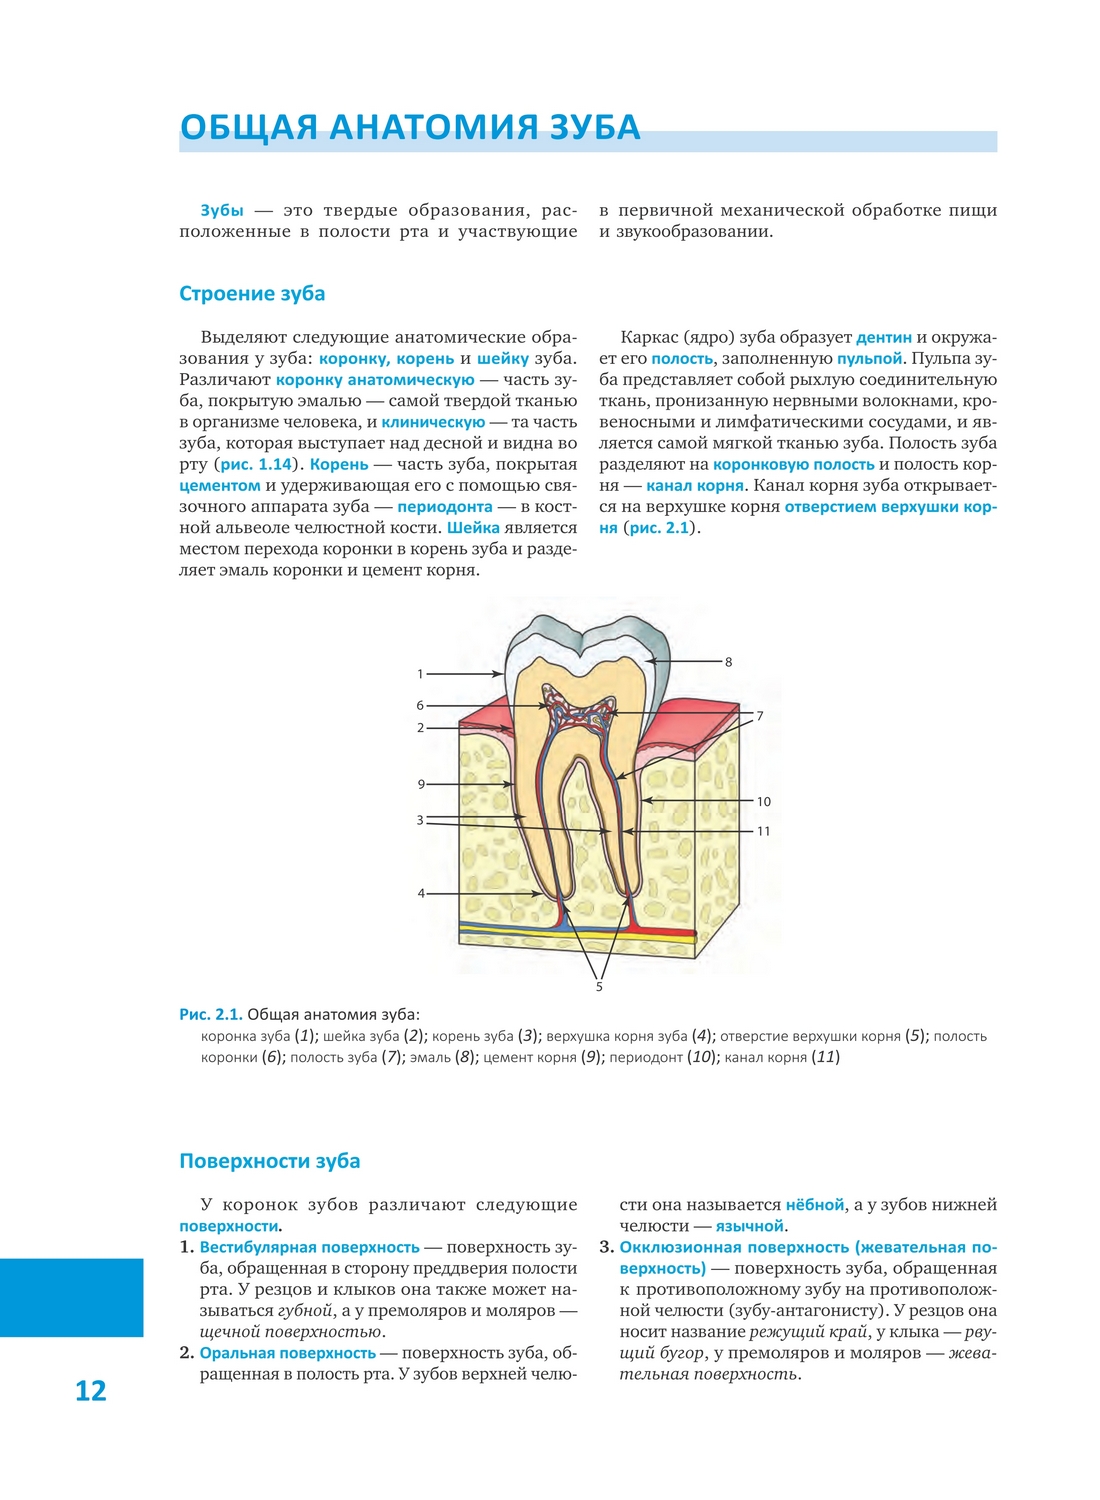 Методологические подходы к моделированию зубов